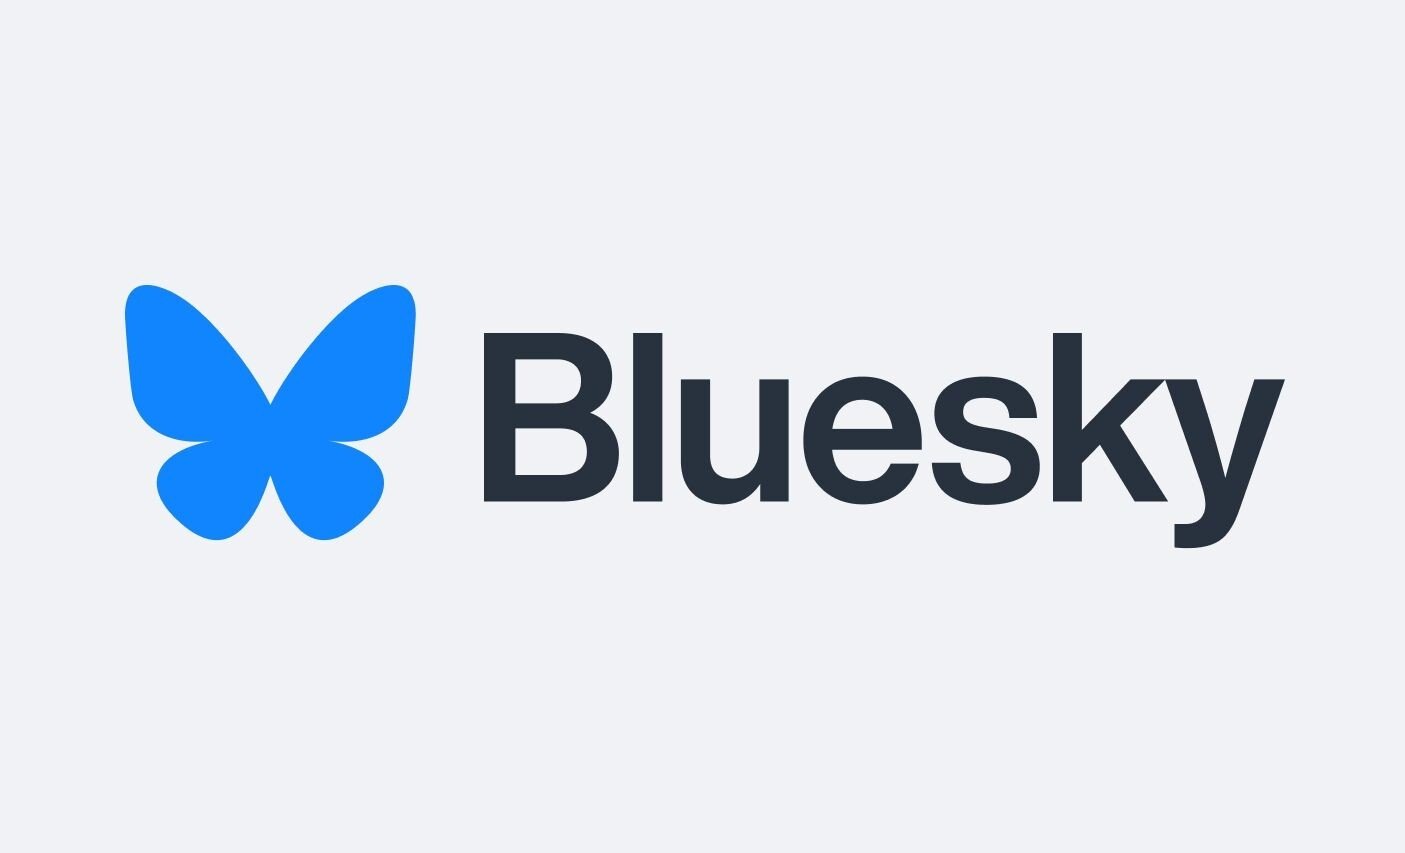 Bluesky regista um milhão de novos utilizadores após retirada de convites